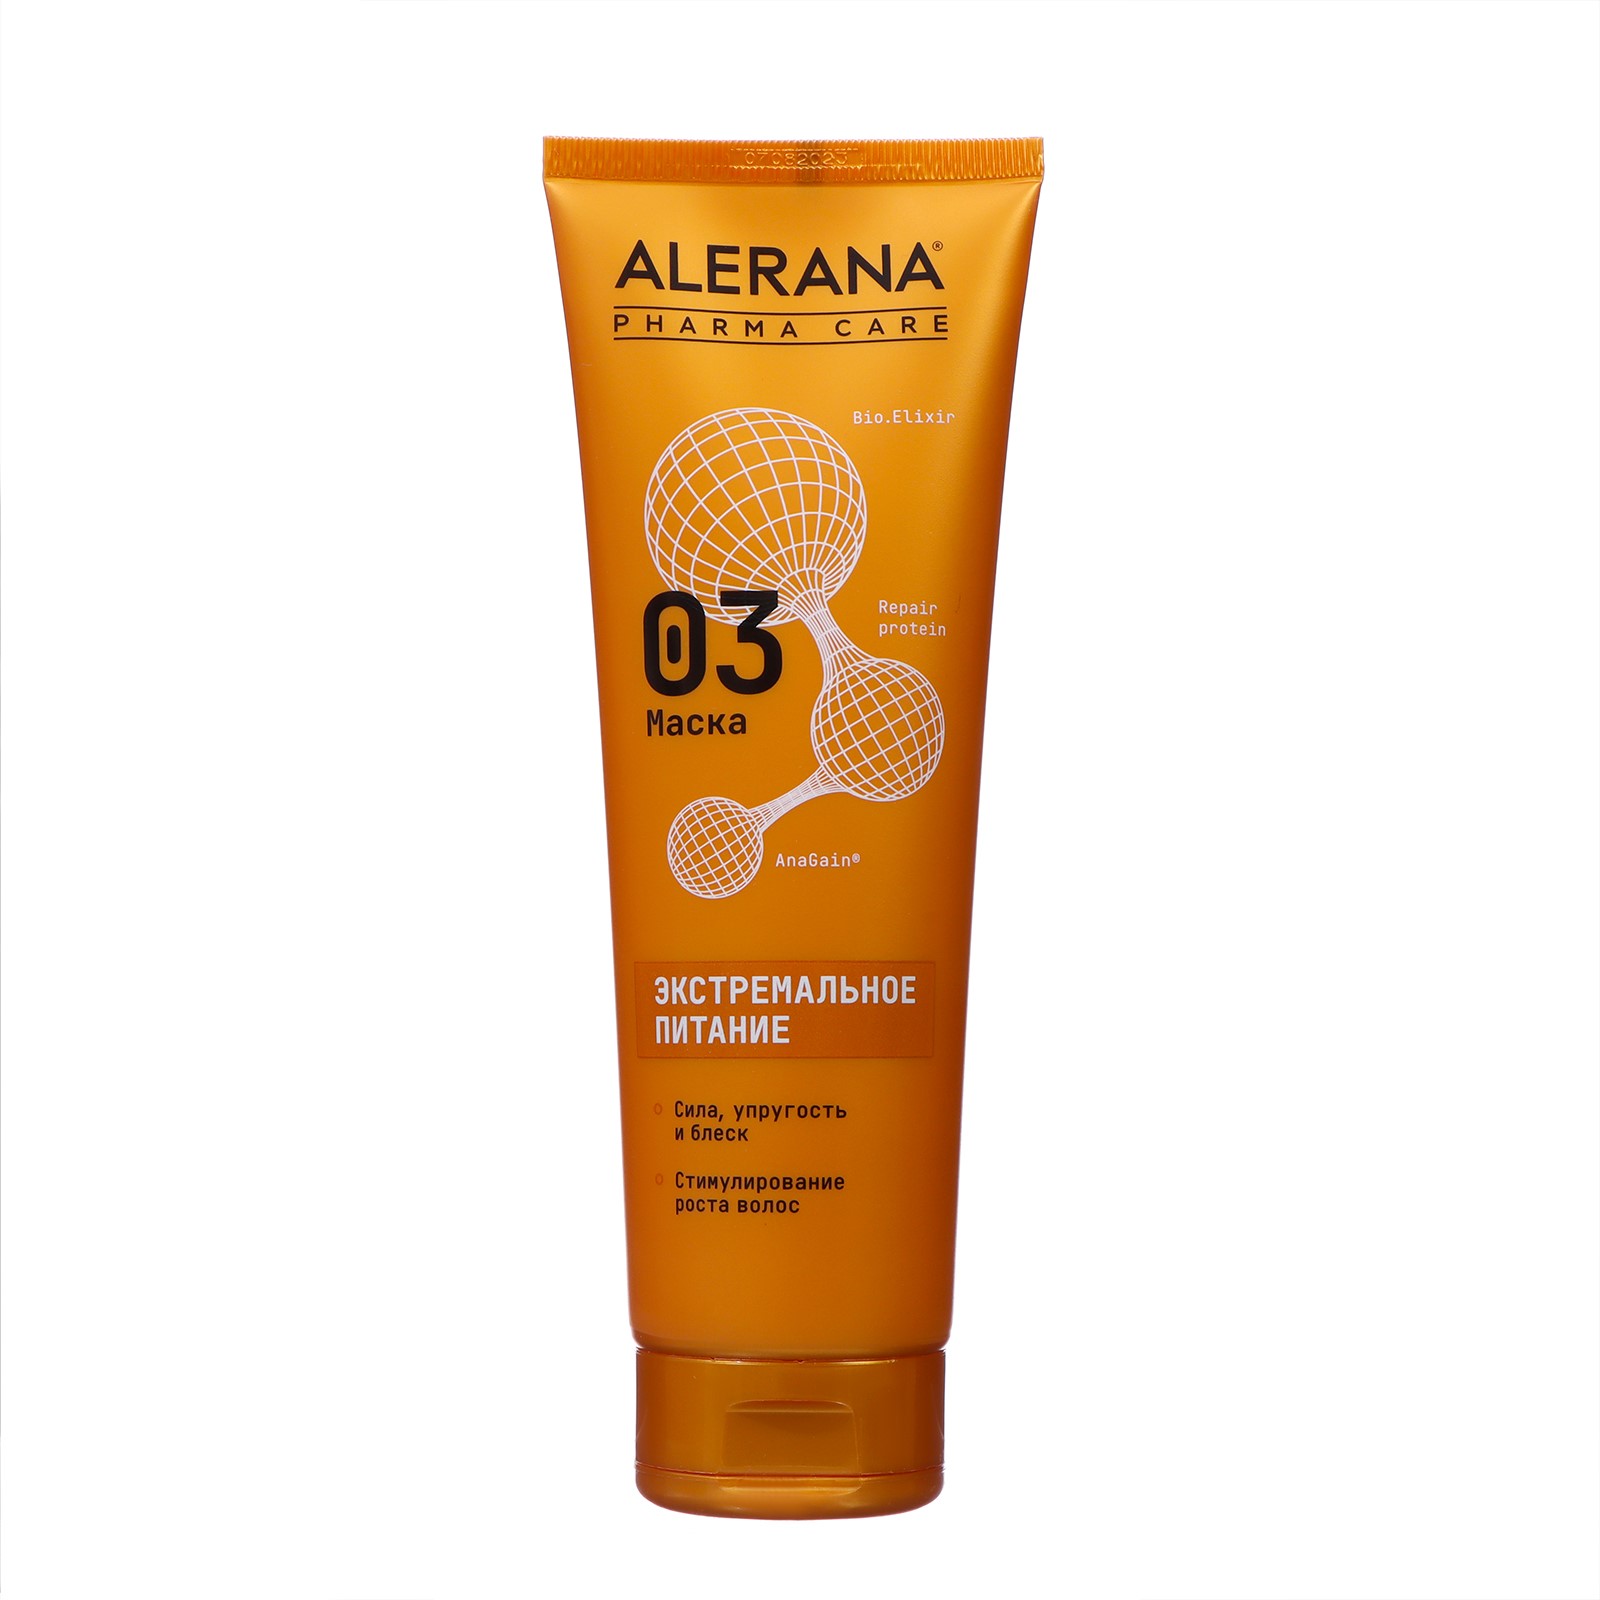 Маска для волос Alerana Pharma care Формула экстремального питания, 260 мл особая серия маска для волос подверженных стрессам интенсивно питательная на розовой глине detox 500